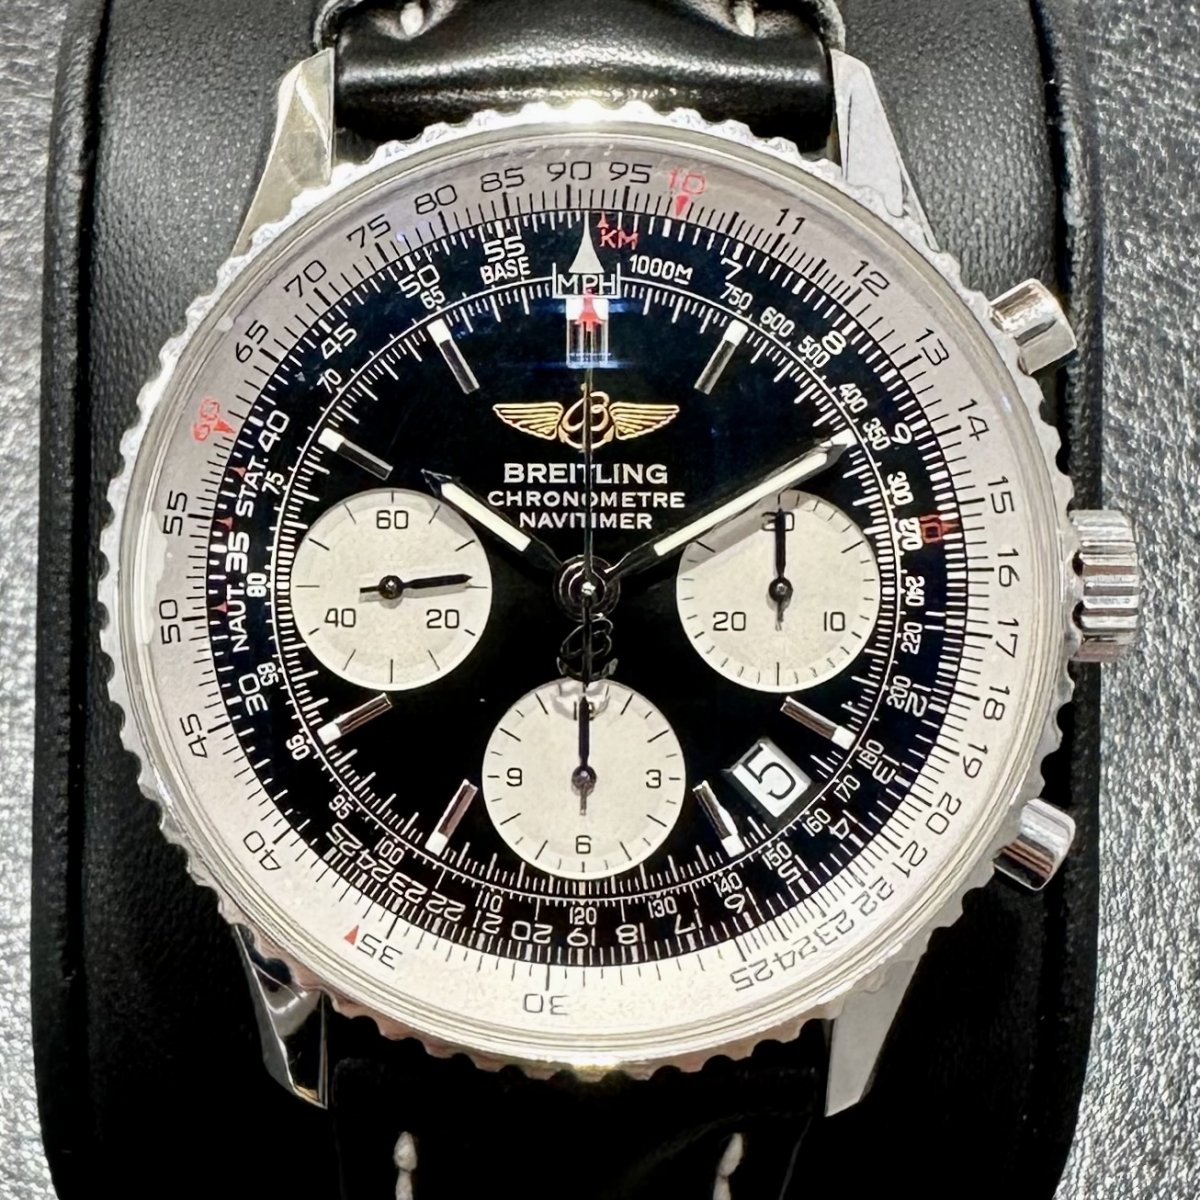 ブライトリングのSS バルジュー7753 A23322 ナビタイマー 自動巻き 腕時計の買取実績です。